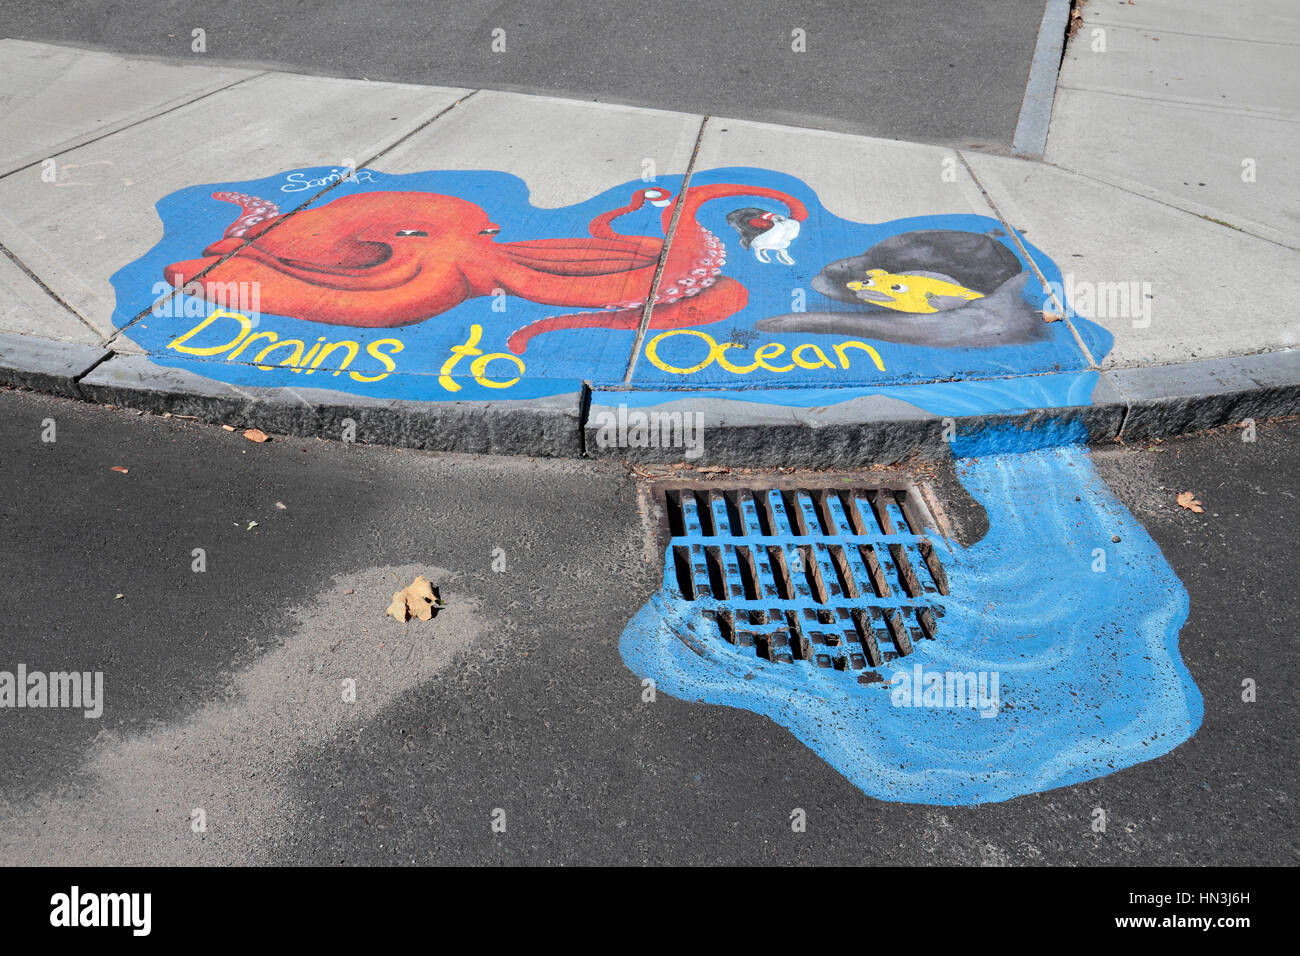 Couvercle vidange peints et surround, une partie du "drainage SmART Salem' projet d'art public dans la région de Salem, Massachusetts, United States. Banque D'Images